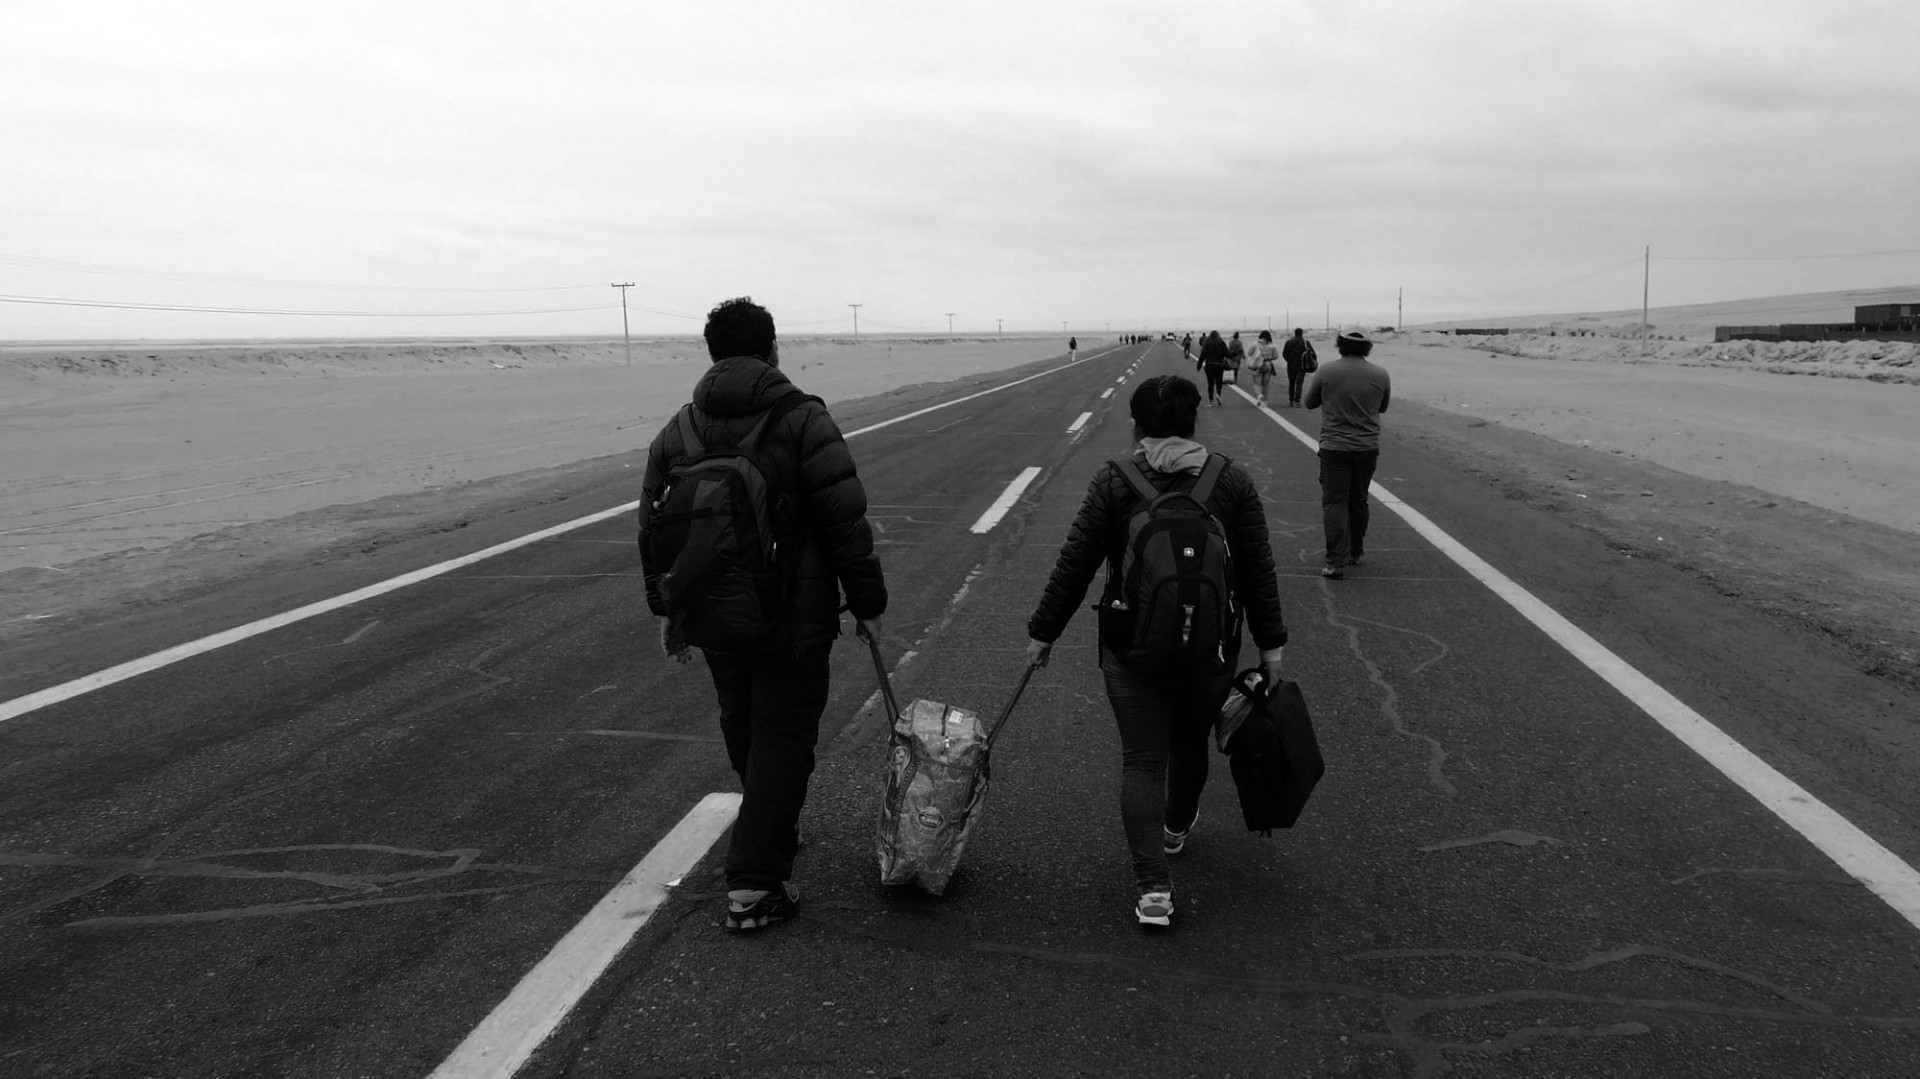 Miles debieron caminar más de 40 minutos para entrar o salir de Perú y Chile.